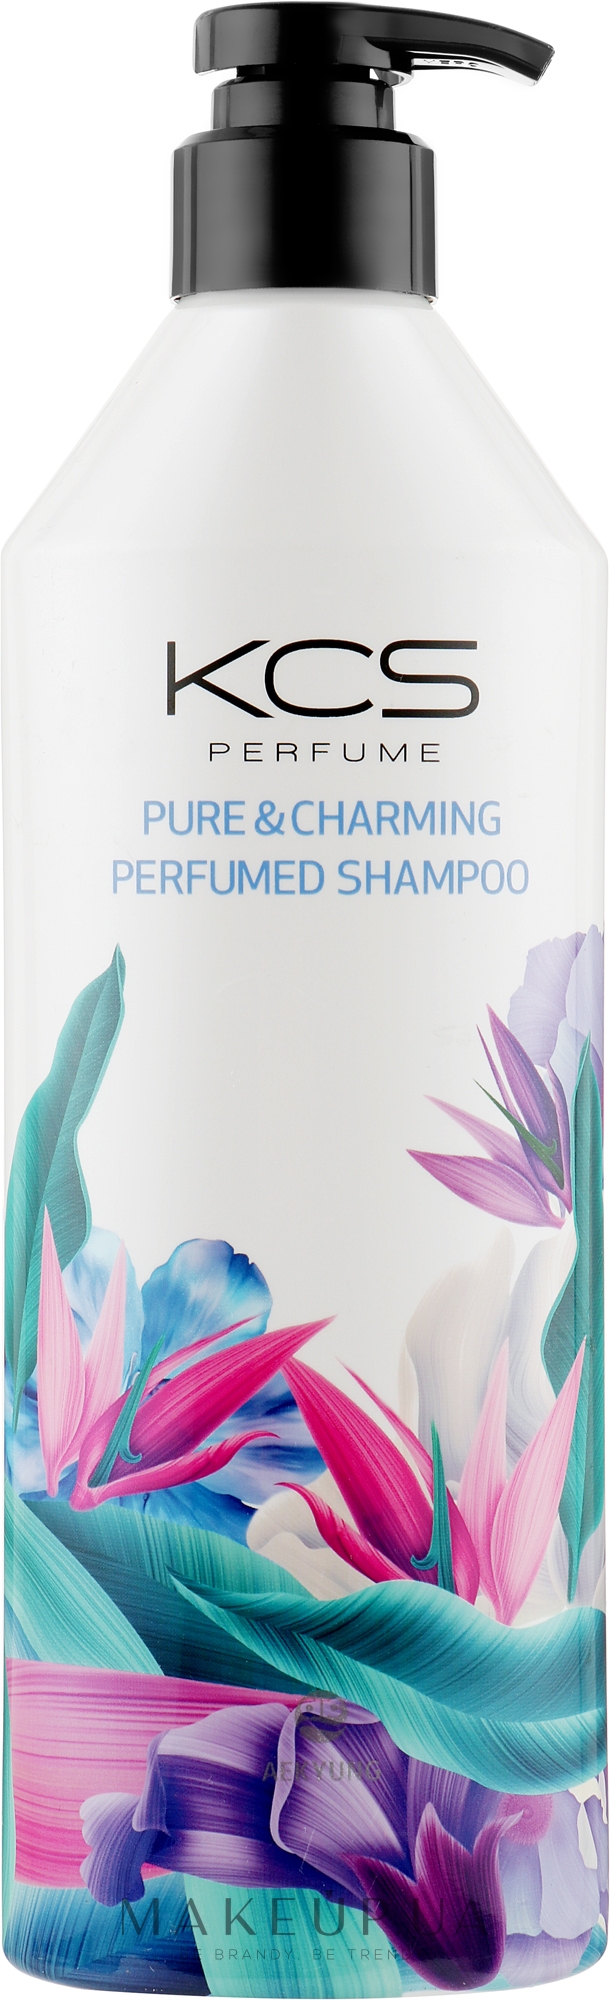 Парфюмированный шампунь для сухих и поврежденных волос - KCS Pure & Charming Perfumed Shampoo — фото 600ml